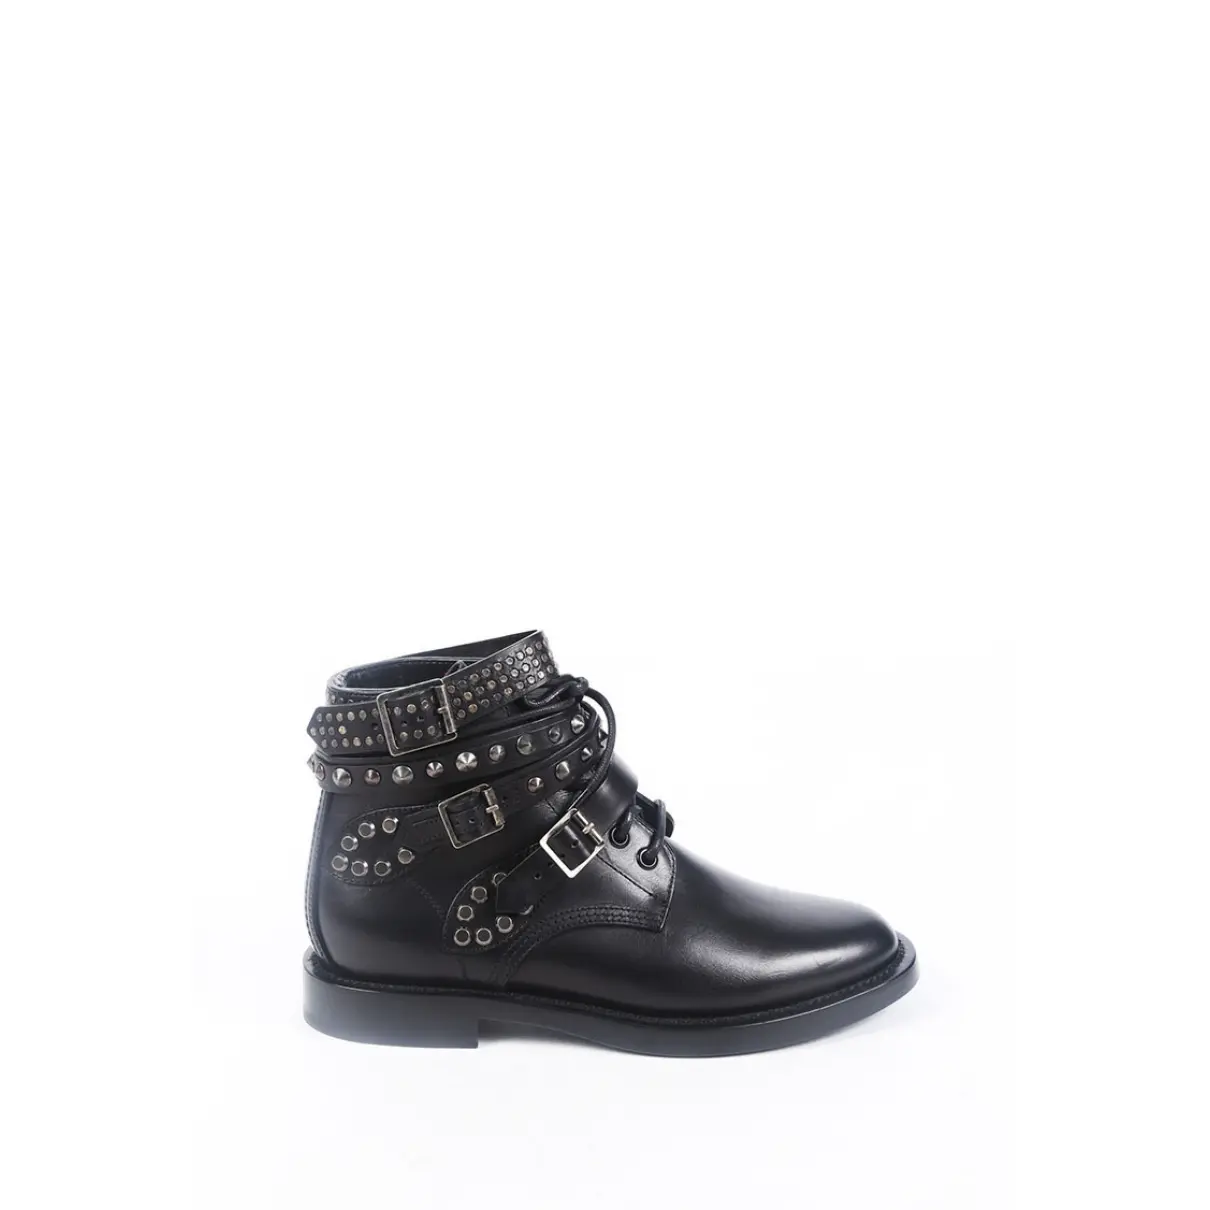 Buy Saint Laurent Leather boots online